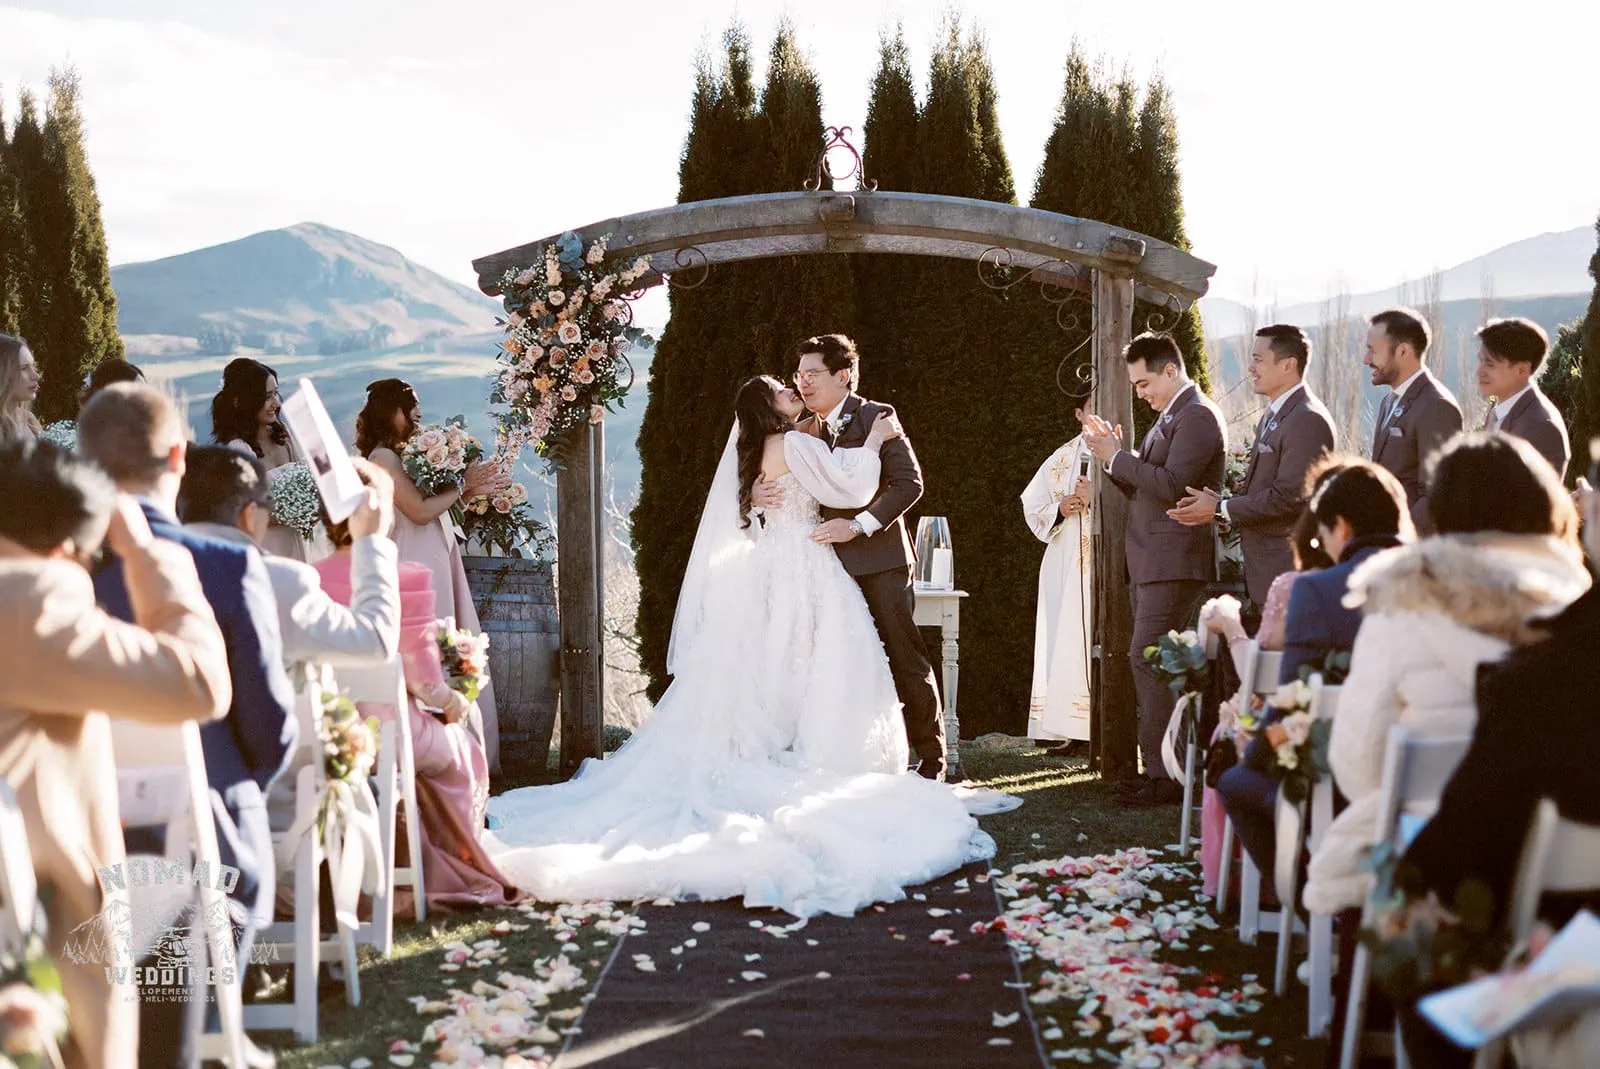 Queenstown New Zealand The Remarkables Double Cone Elopement Wedding Photographer Mt. Creighton jpg.
